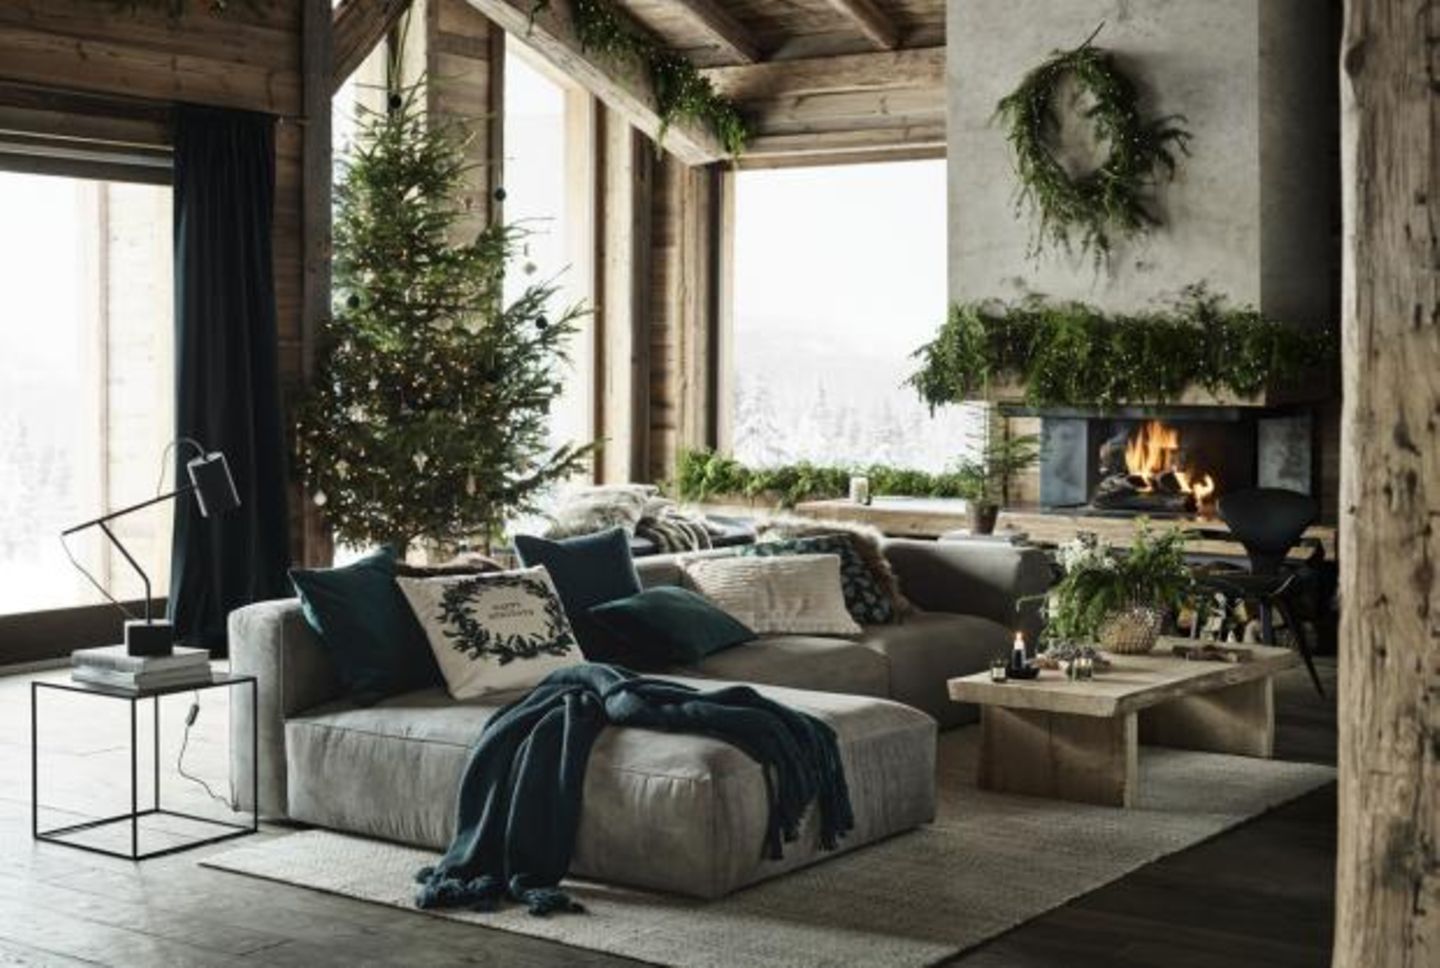 Weihnachten mit Hütten-Romantik - dekoriertes Wohnzimmer mit offener Feuerstelle